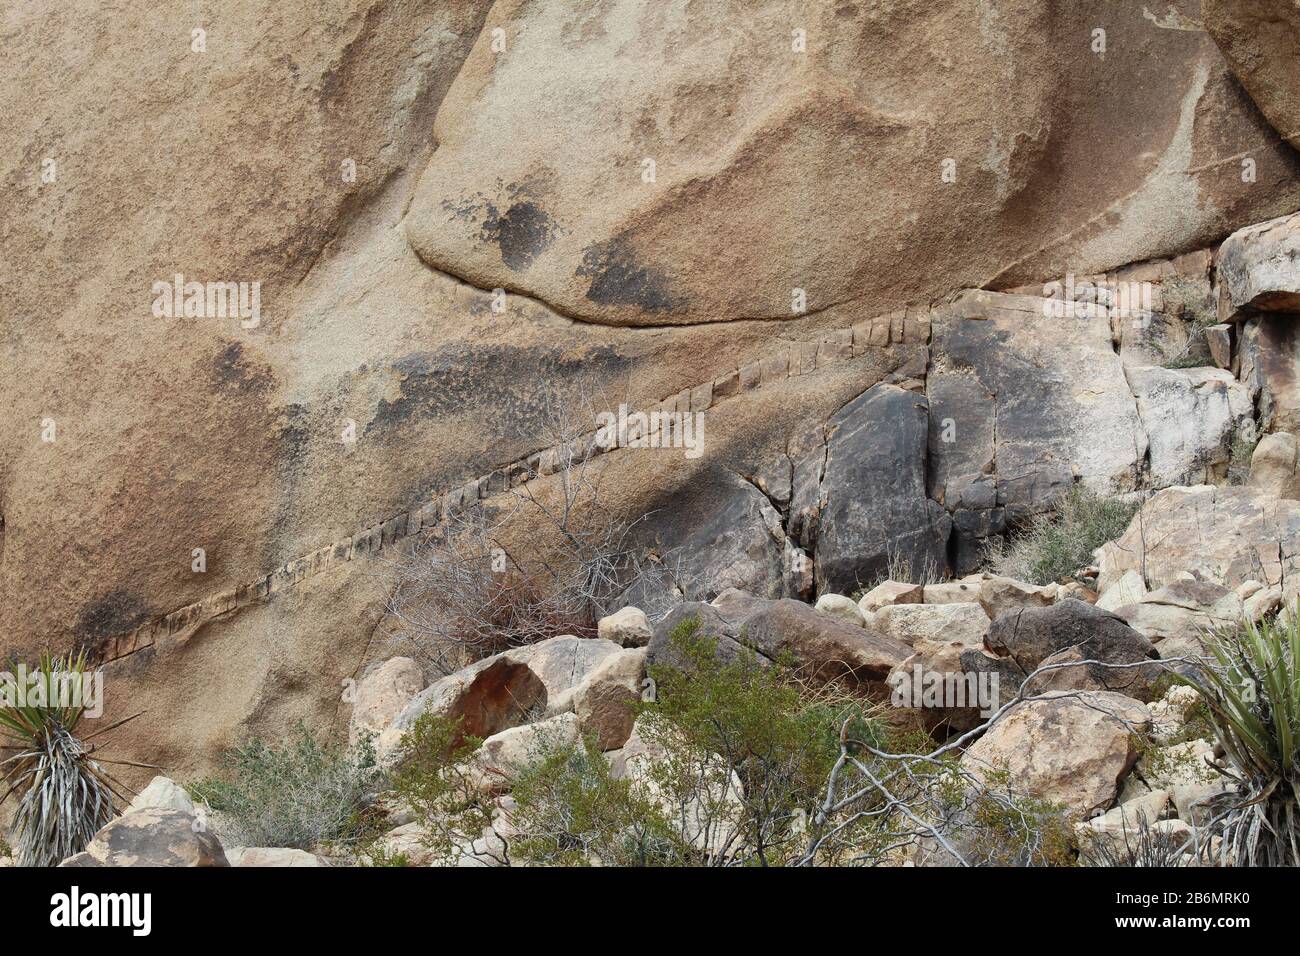 Einige Felsen im Joshua Tree National Park der südlichen Mojave-Wüste zeigen Streifen mit unterschiedlichem aussehenden Material, das als geologische Deiche bekannt ist. Stockfoto